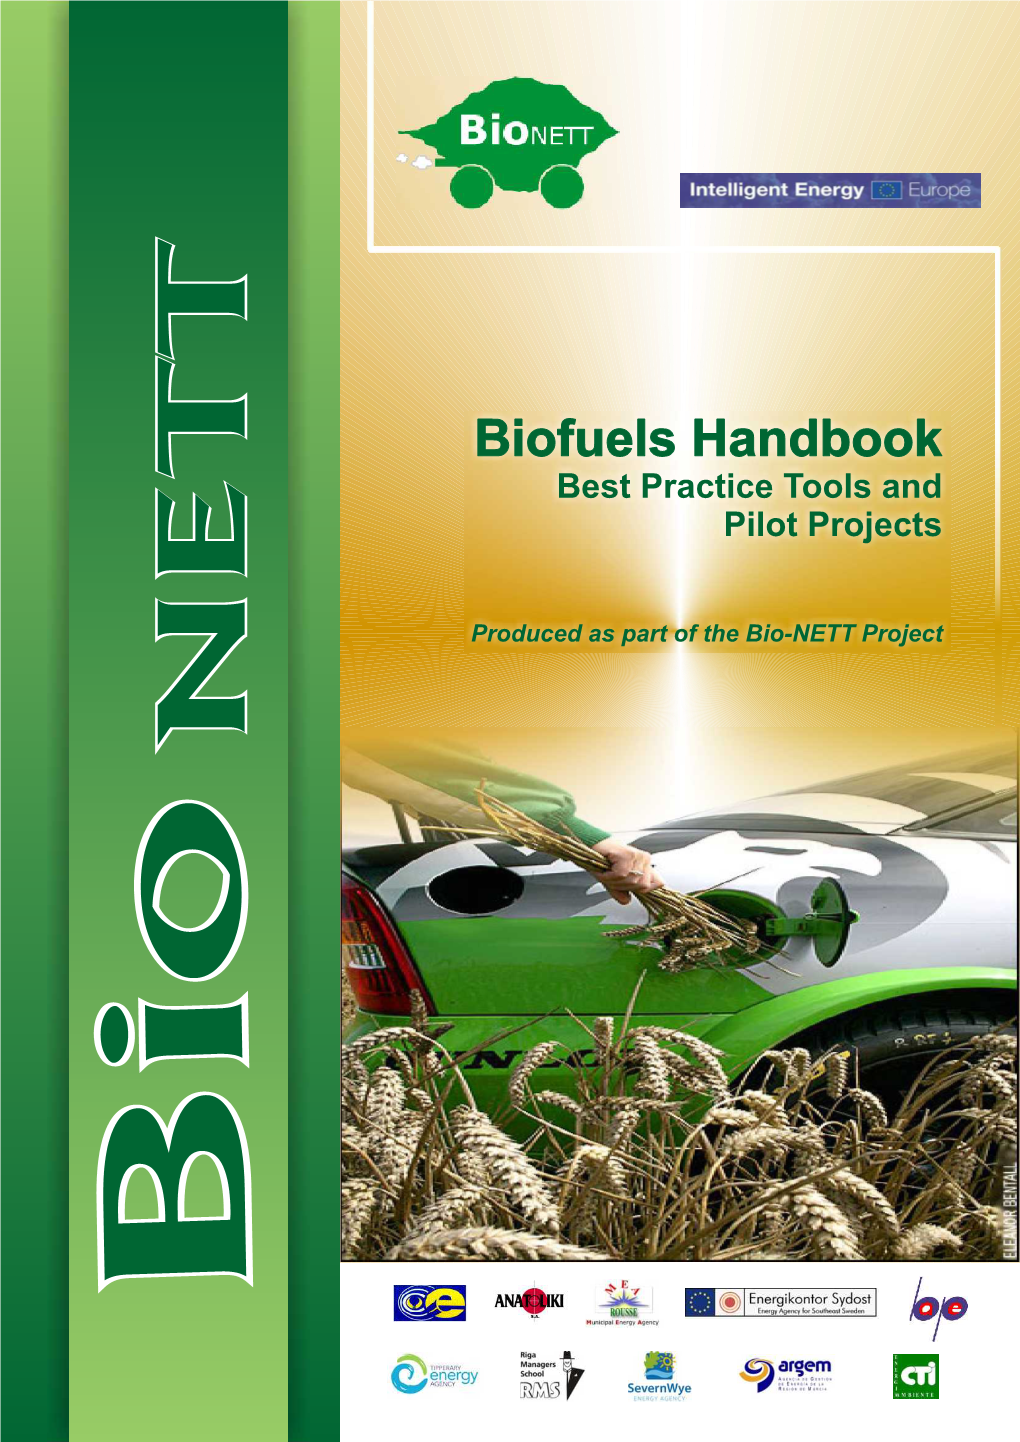 The Bionett Handbook